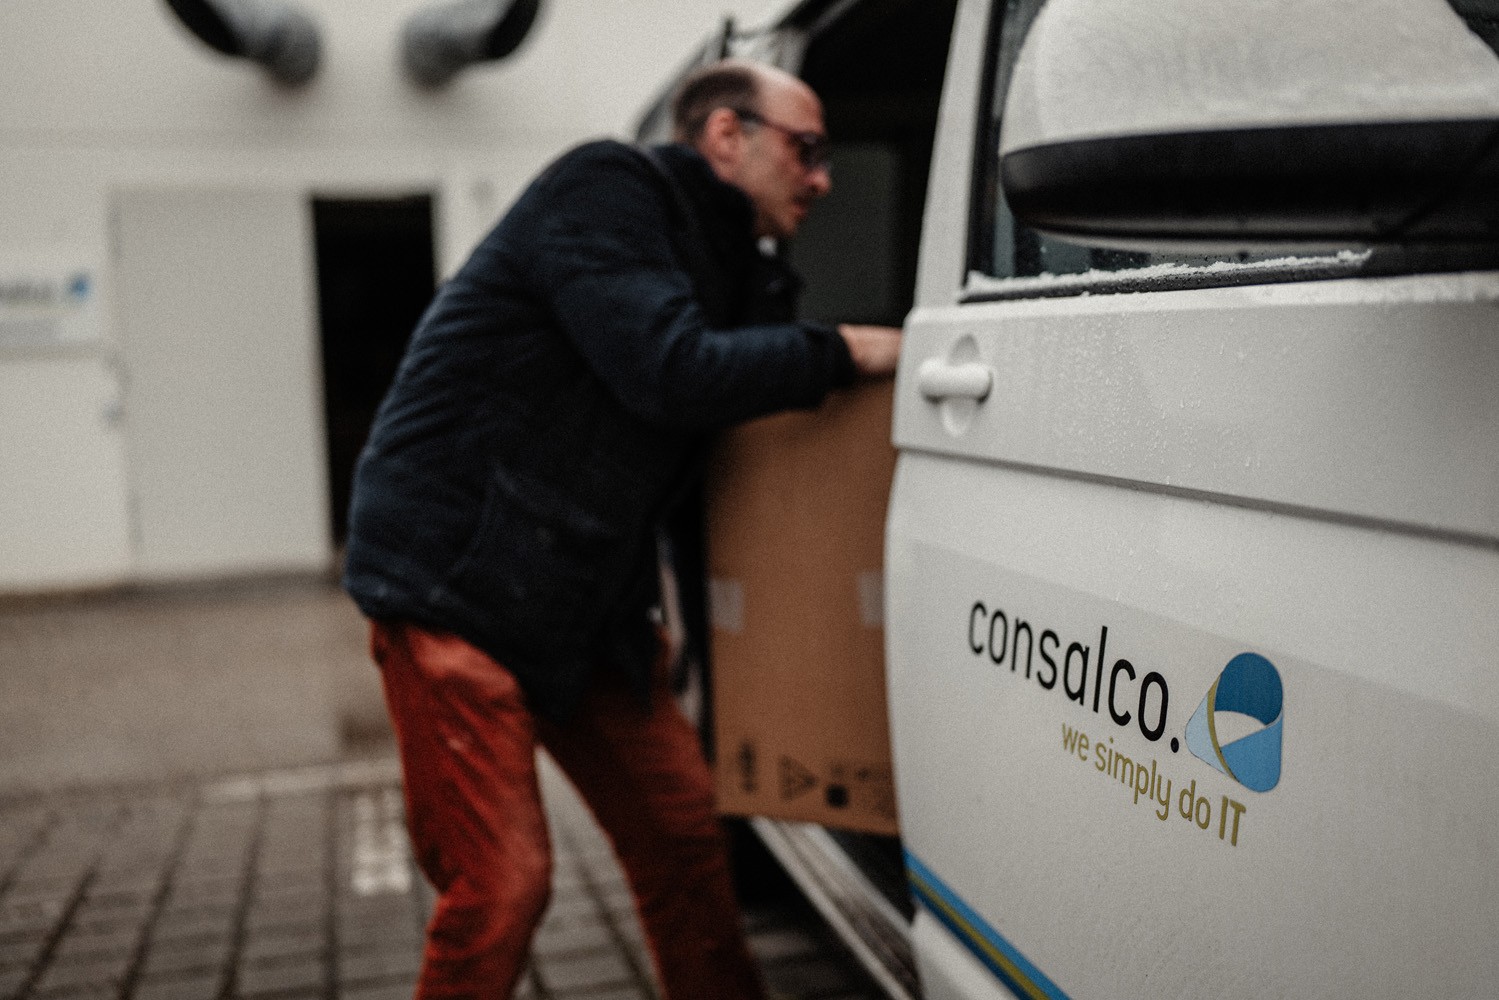 Consalco - Logistics & Supply